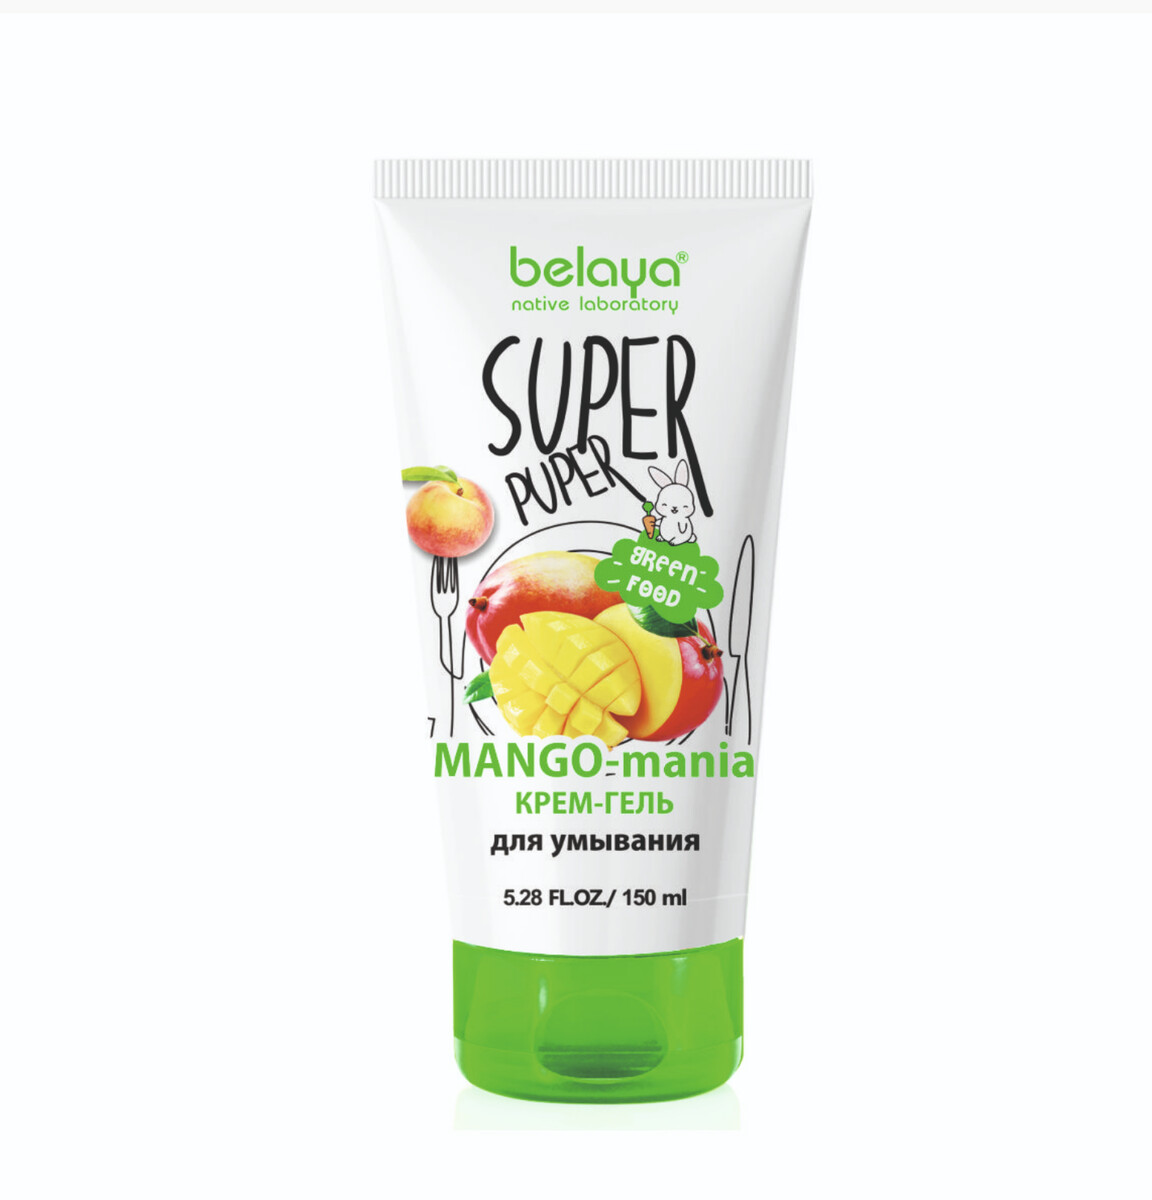 Super puper крем-гель для умывания (mango-mania) 150мл крем гель для умывания для сухой и чувствительной кожи150мл